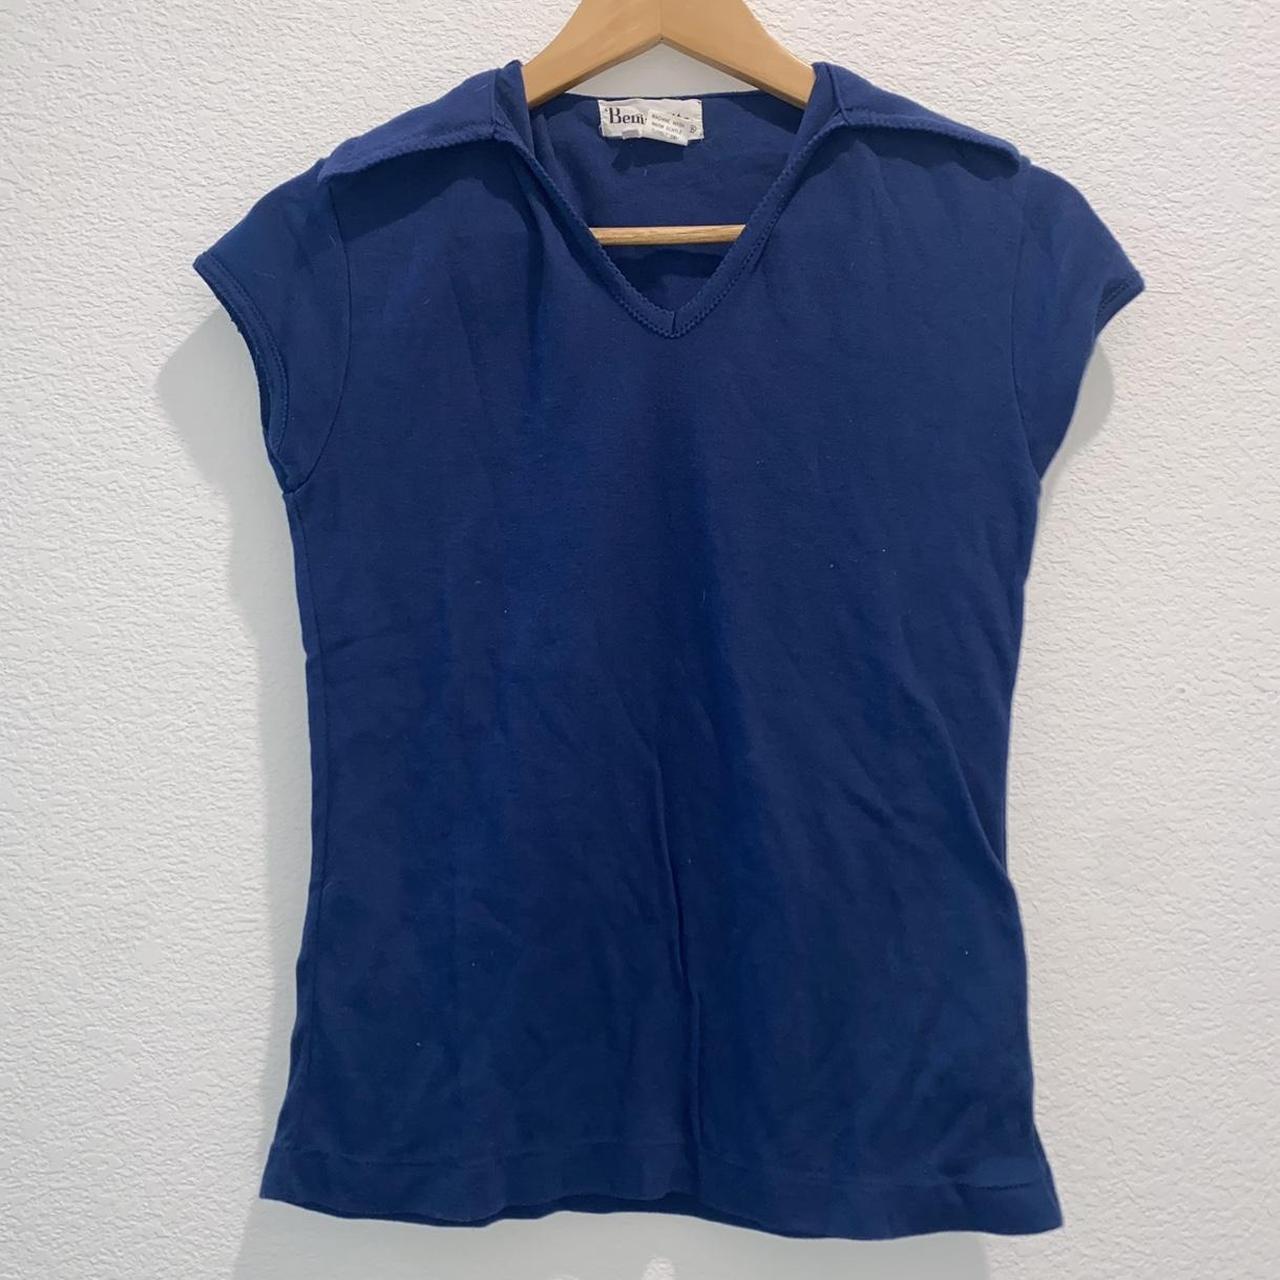 Bernadette Women's Navy and Blue Shirt